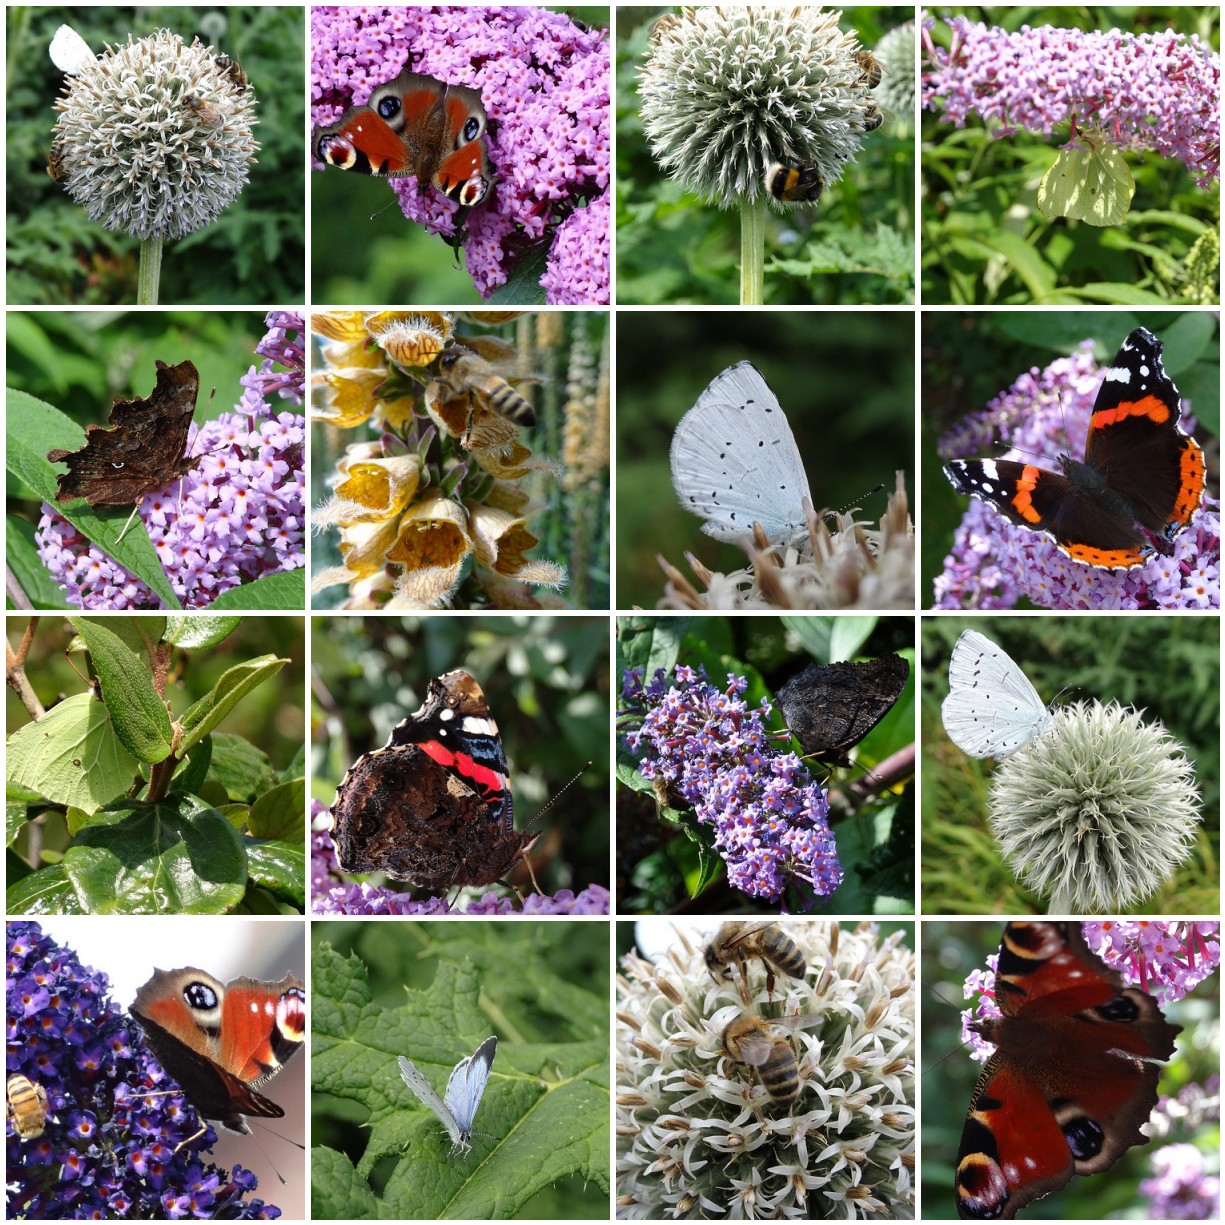 The Snail Garden: Bees and Butterflies